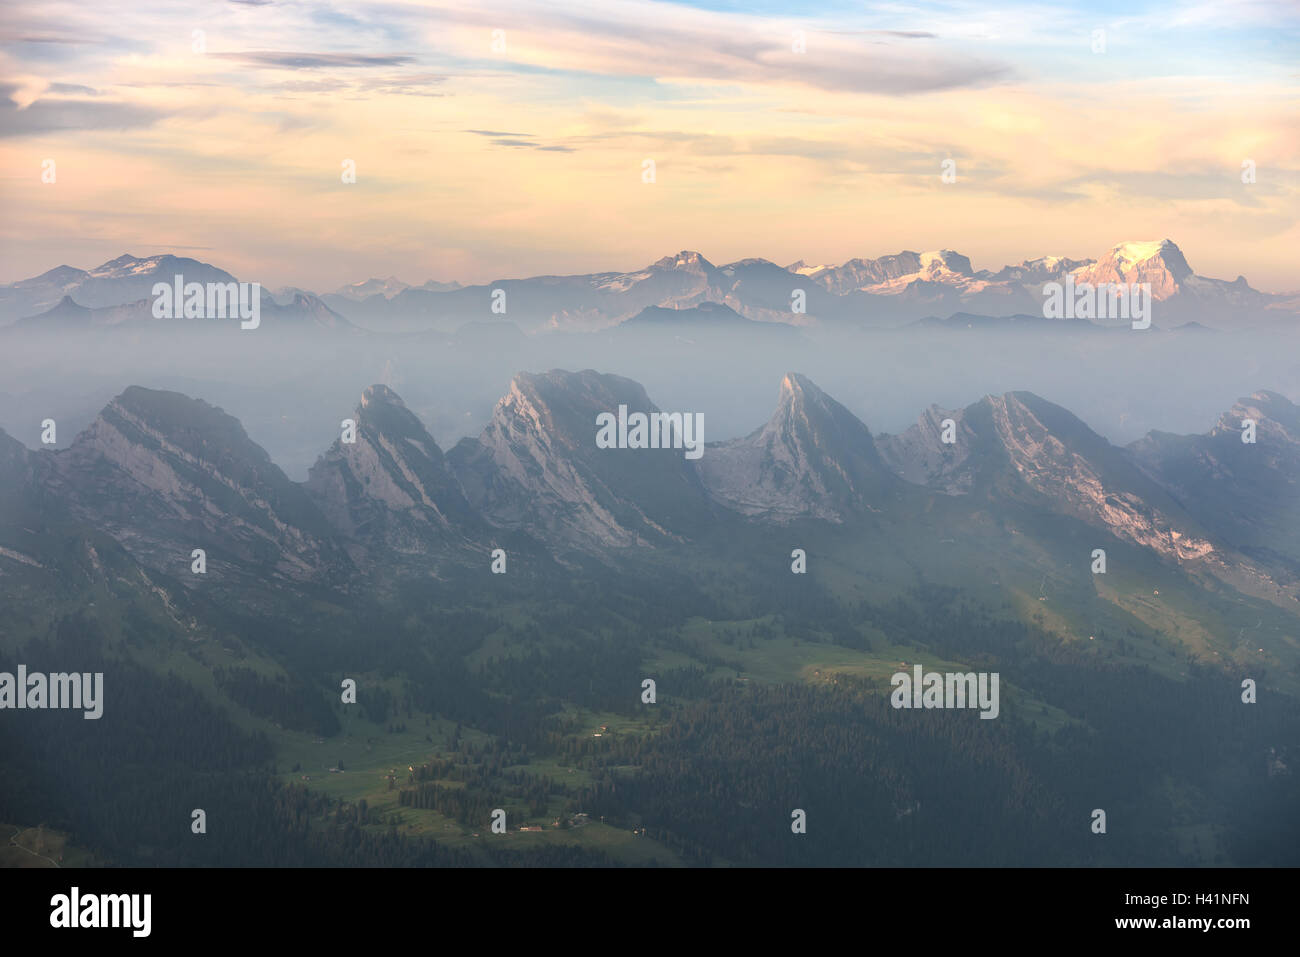 Mountain range at sunrise, Wildhaus, Appenzell Innerrhoden, Switzerland Stock Photo